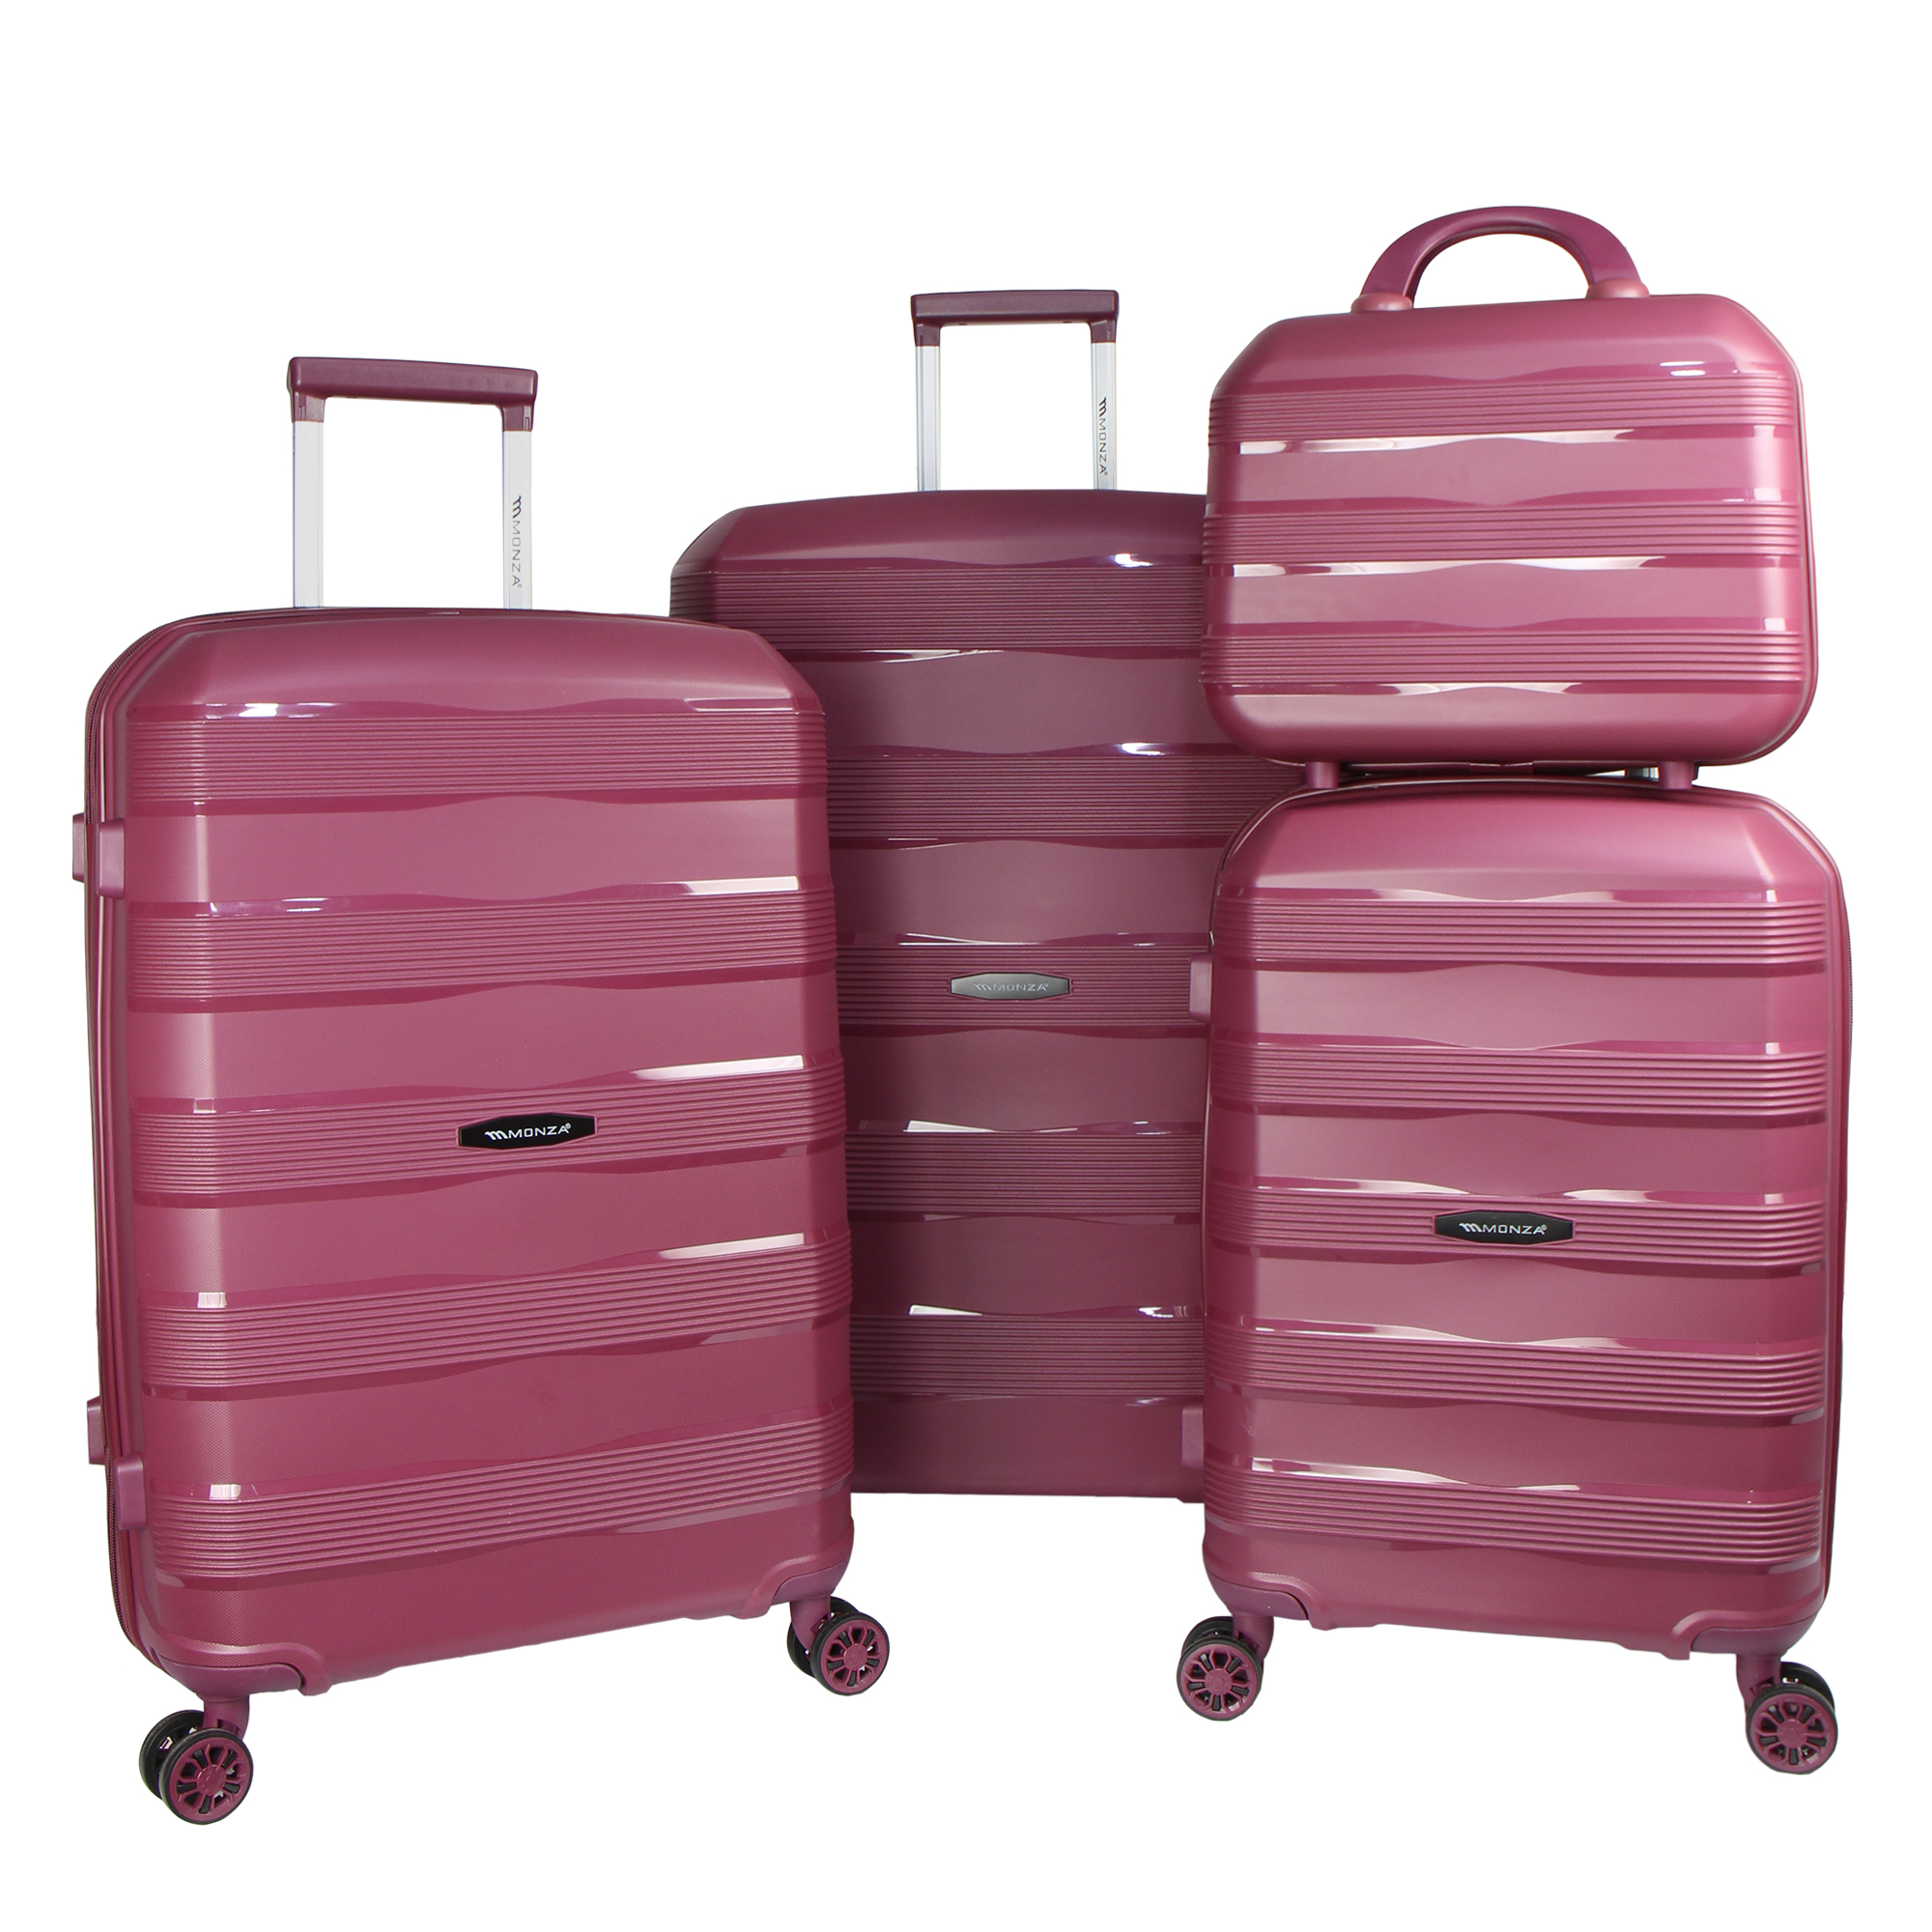 نکته خرید - قیمت روز مجموعه چهار عددی چمدان مونزا مدل C01012 خرید